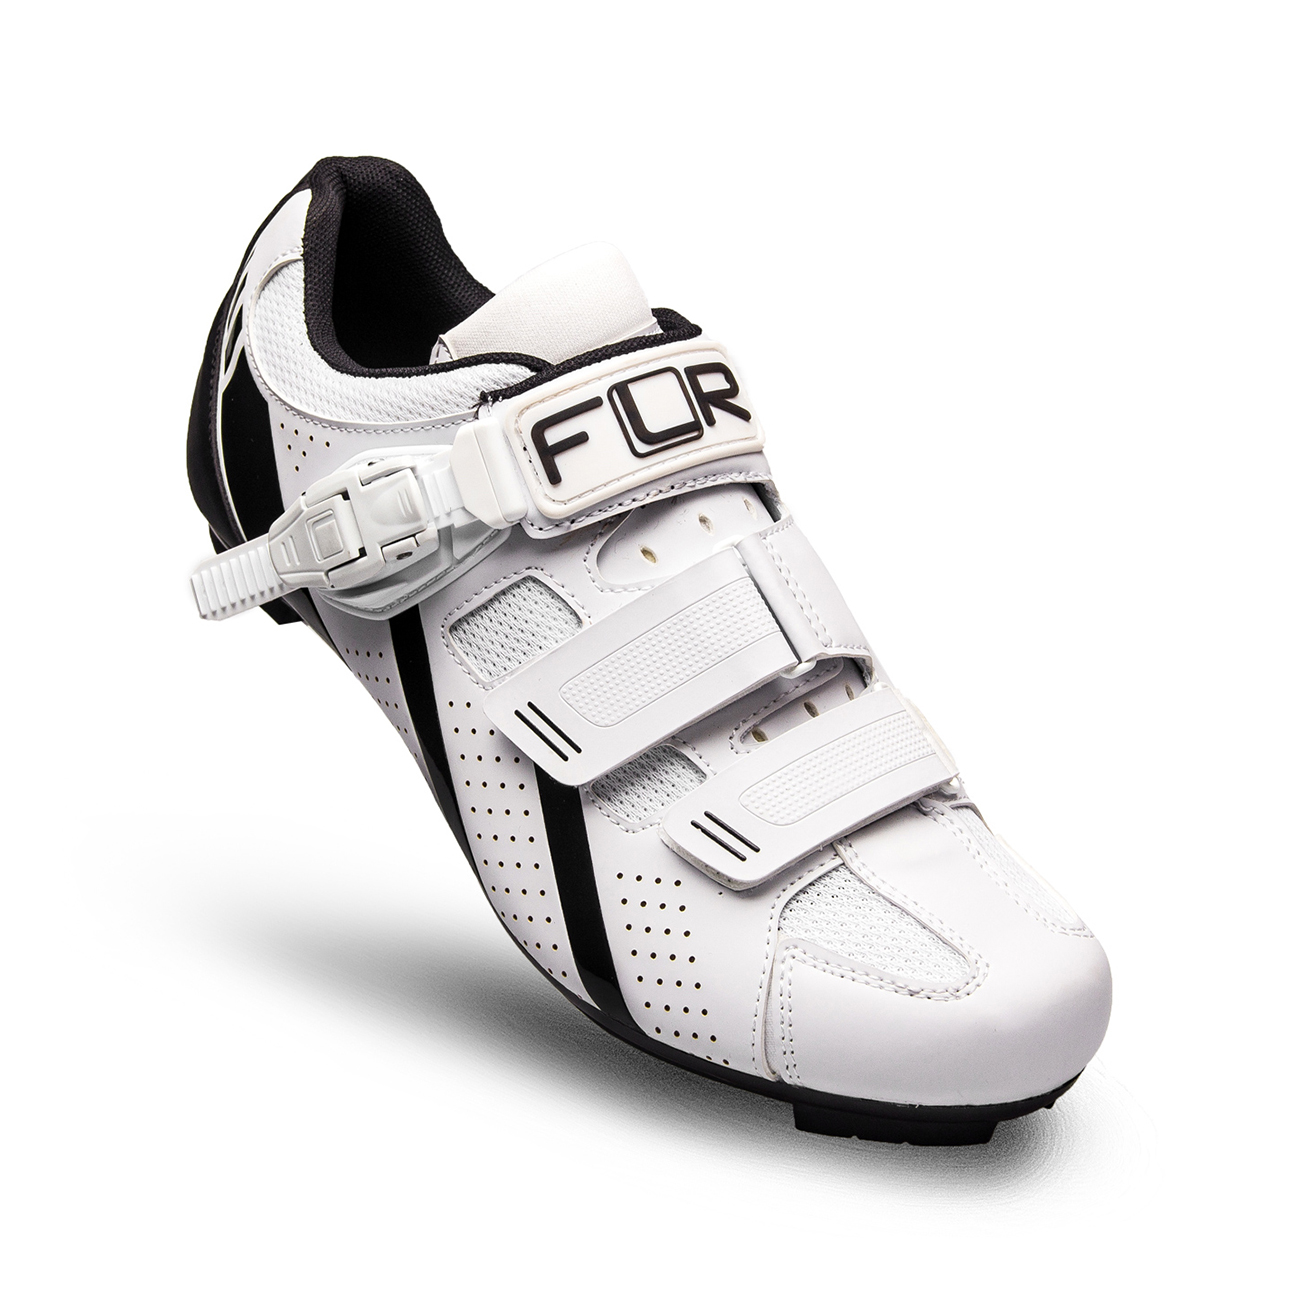 
                FLR Cyklistické tretry - F15 - čierna/biela 42
            